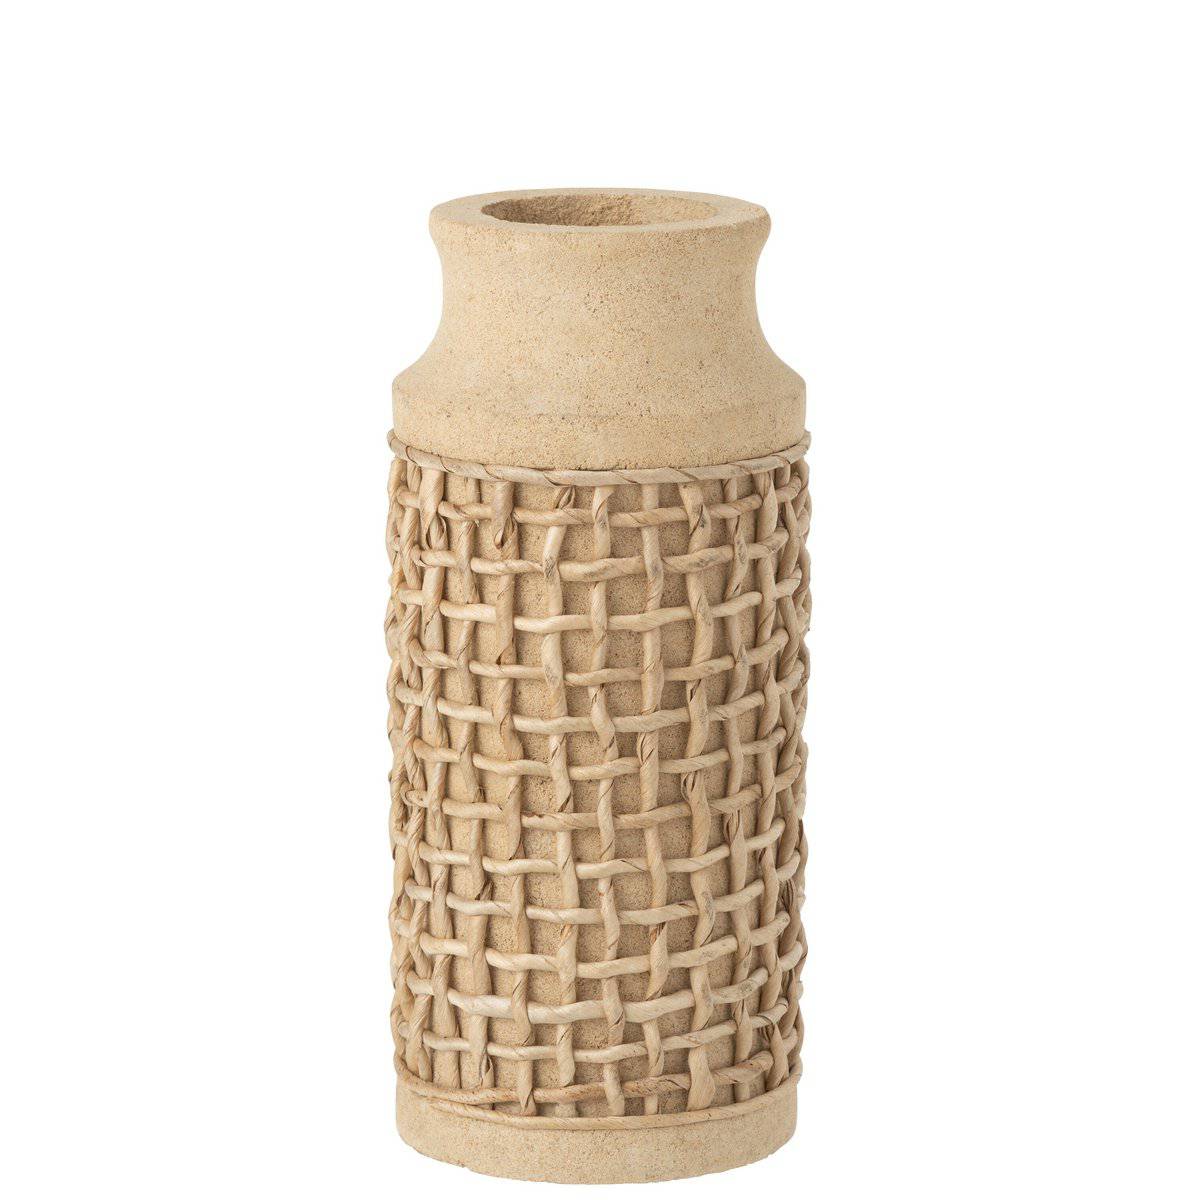 J-Line Vase Ella Cement Sand Natural - 32 cm high